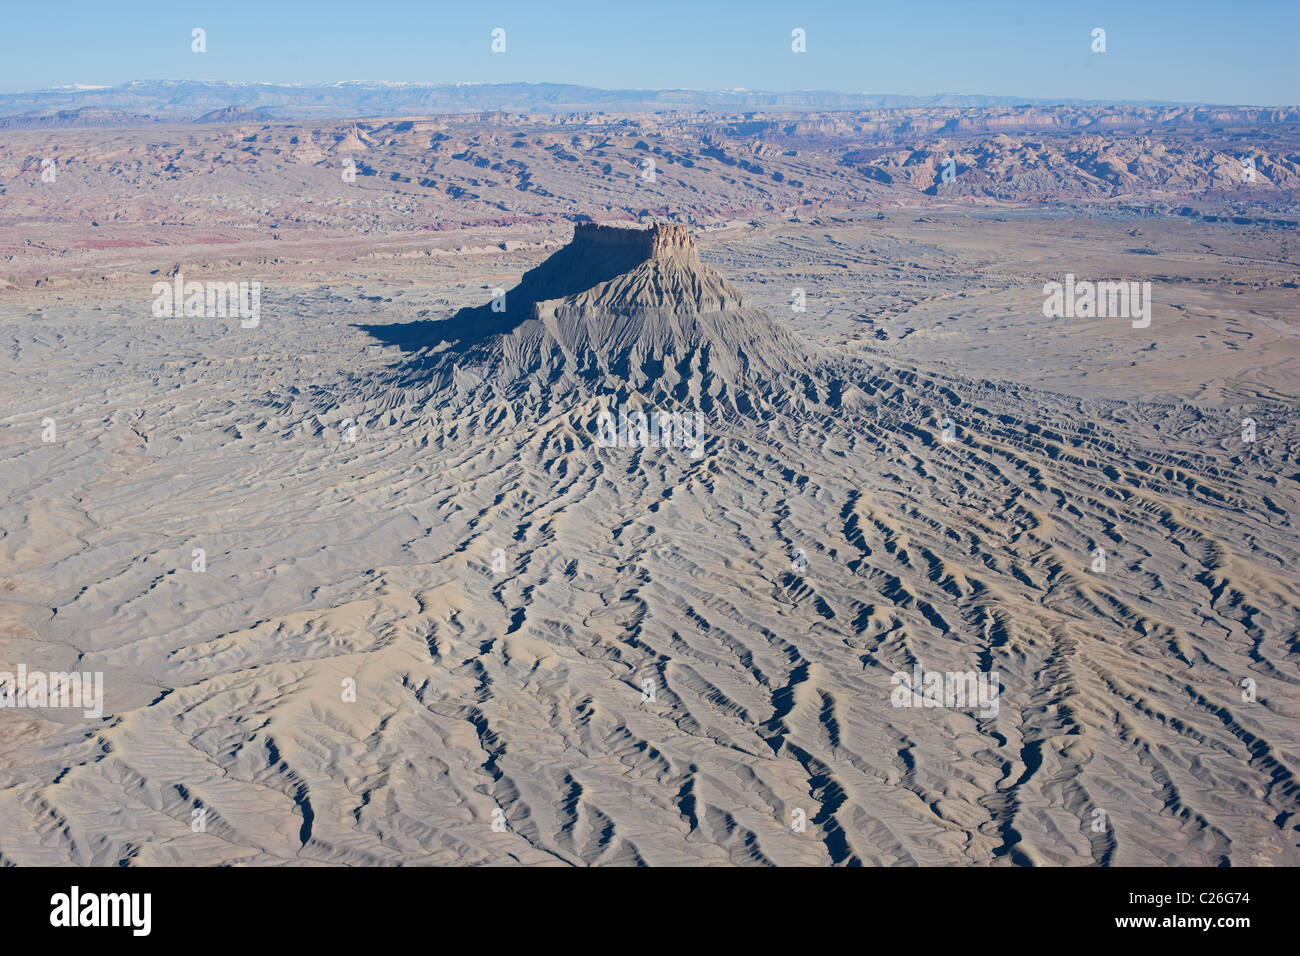 LUFTAUFNAHME. Butte, die (um etwa 500 Meter) aus der relativ flachen umliegenden Wüste herauskommt. Werkseinstellung. Caineville, Wayne County, Utah, USA. Stockfoto